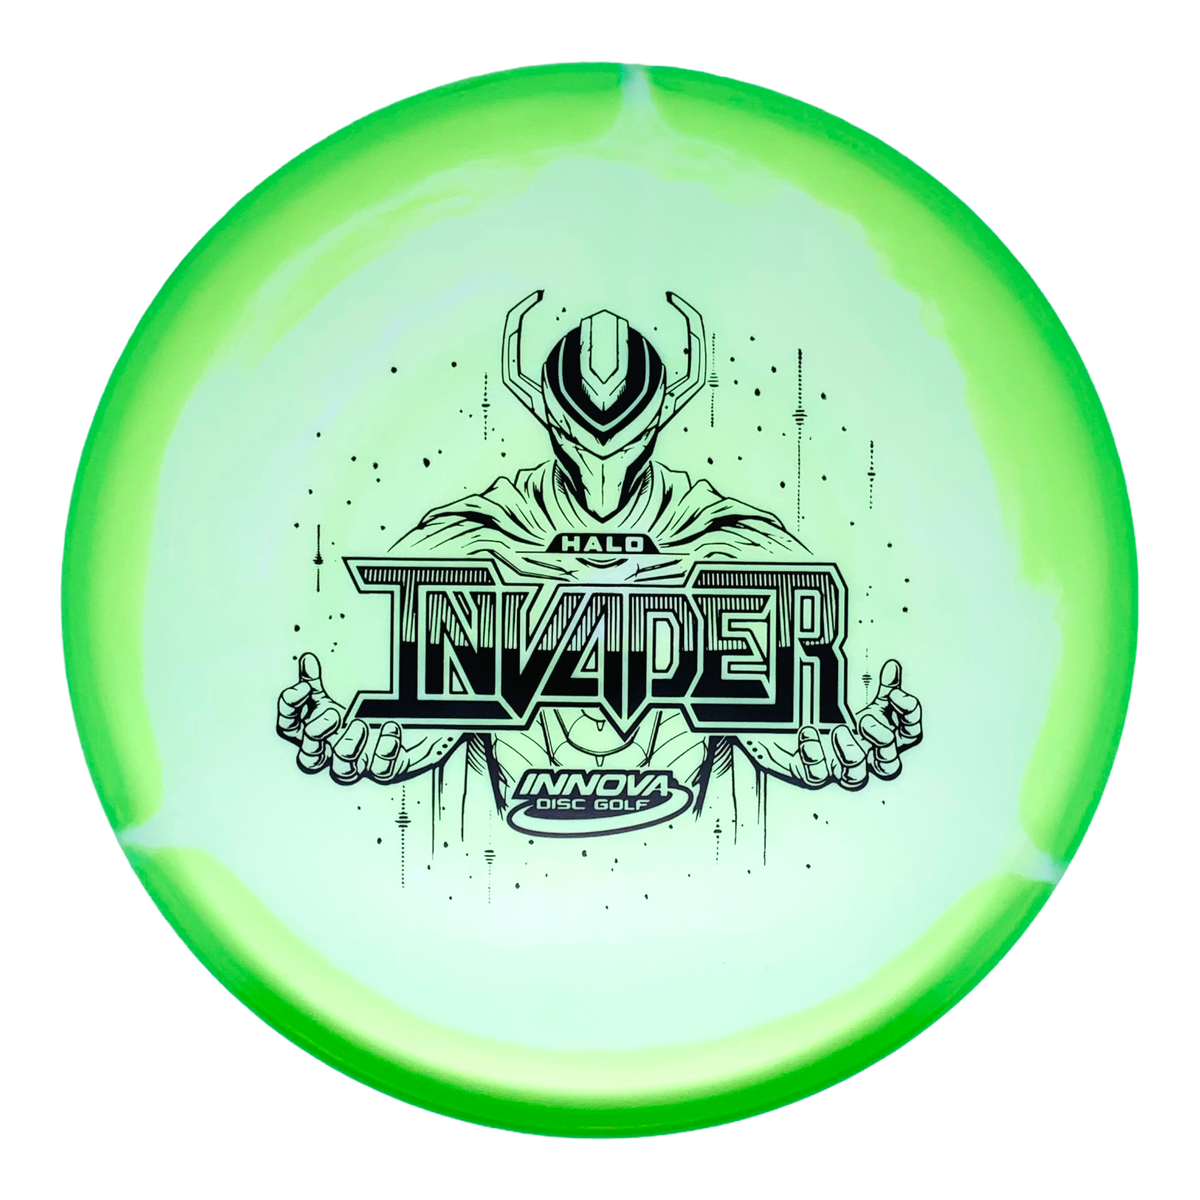 Innova Halo Star Invader